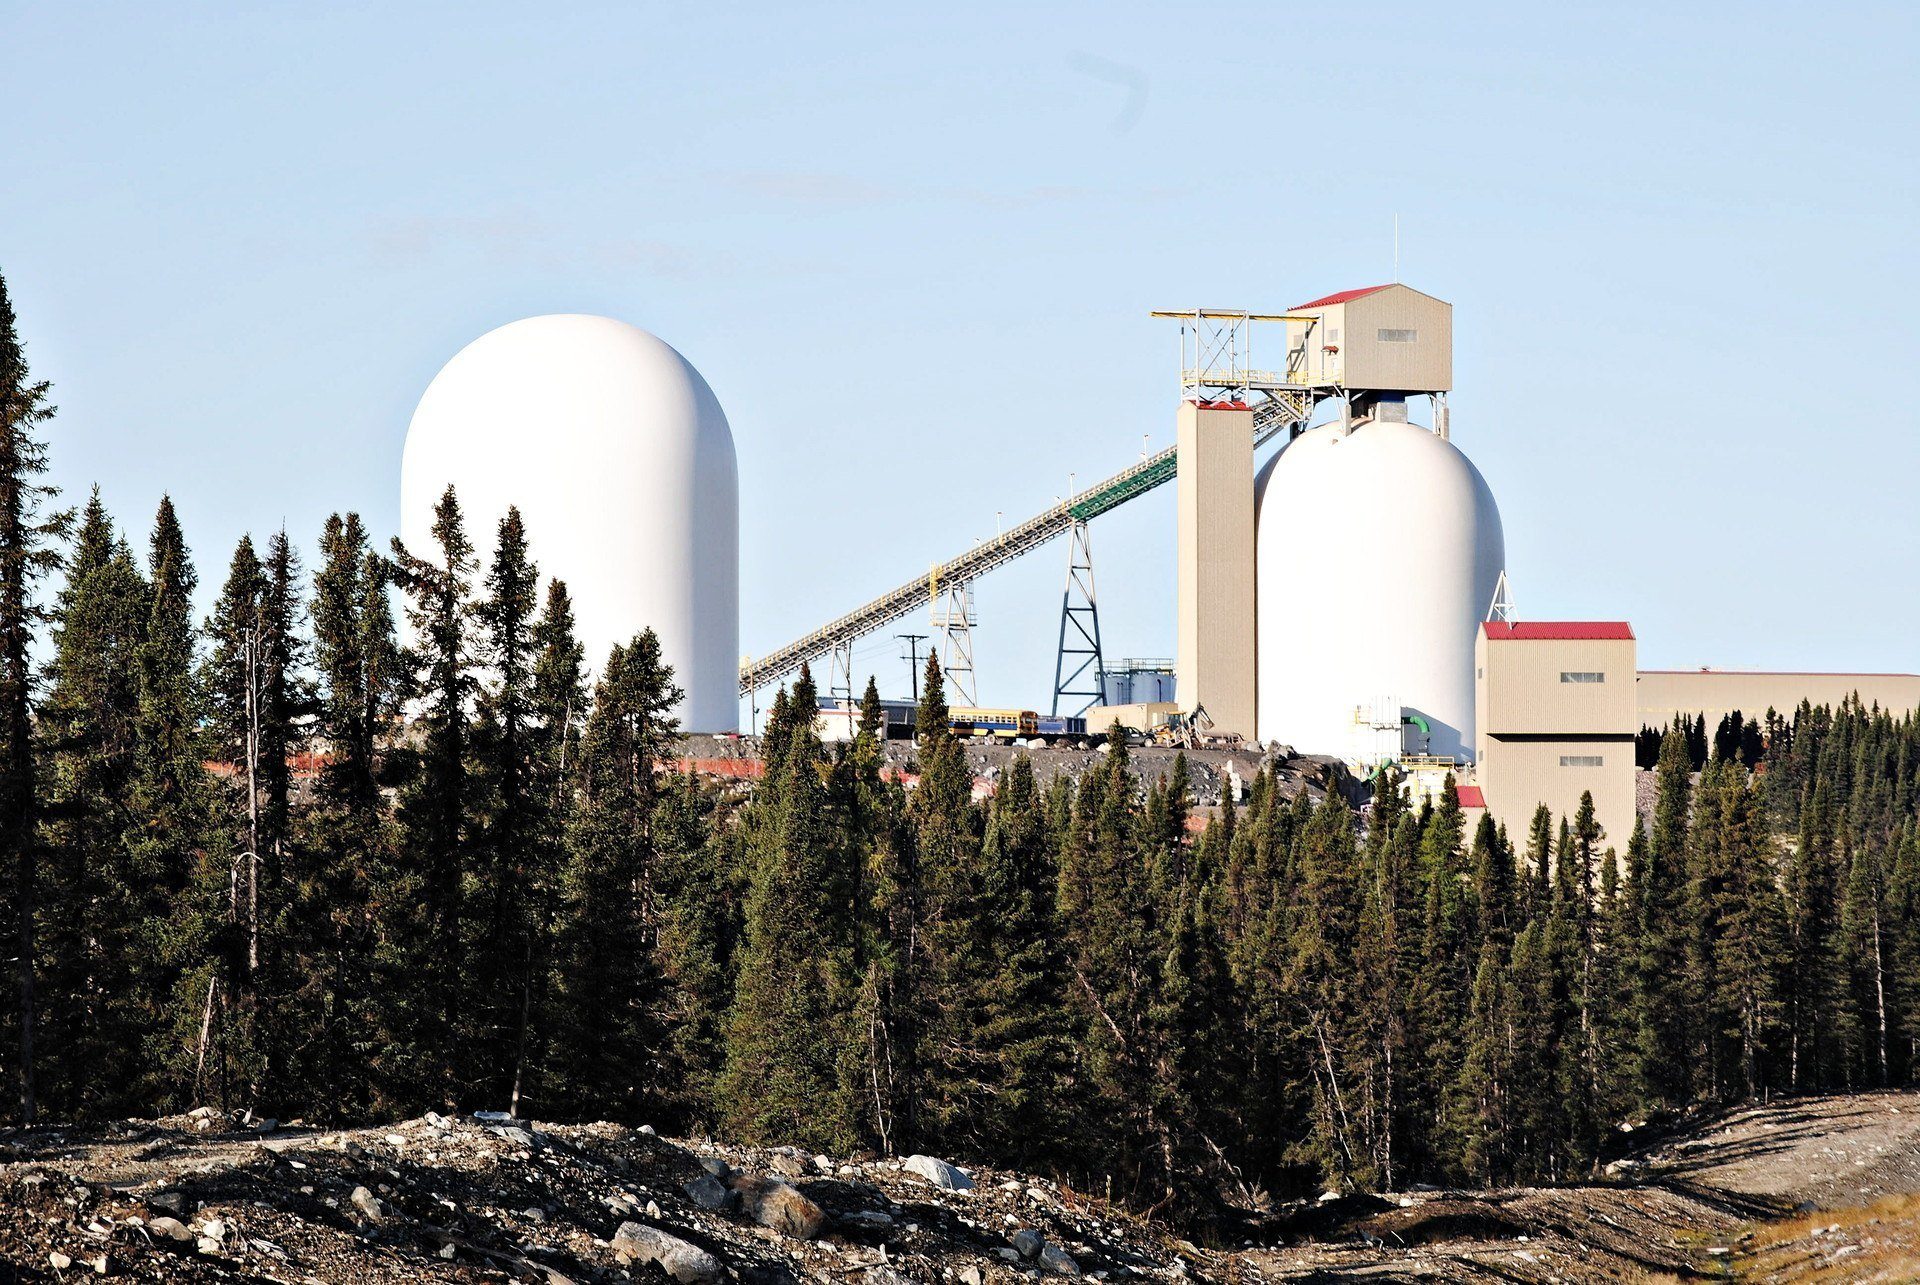 Iron ore bulk storage dome silos